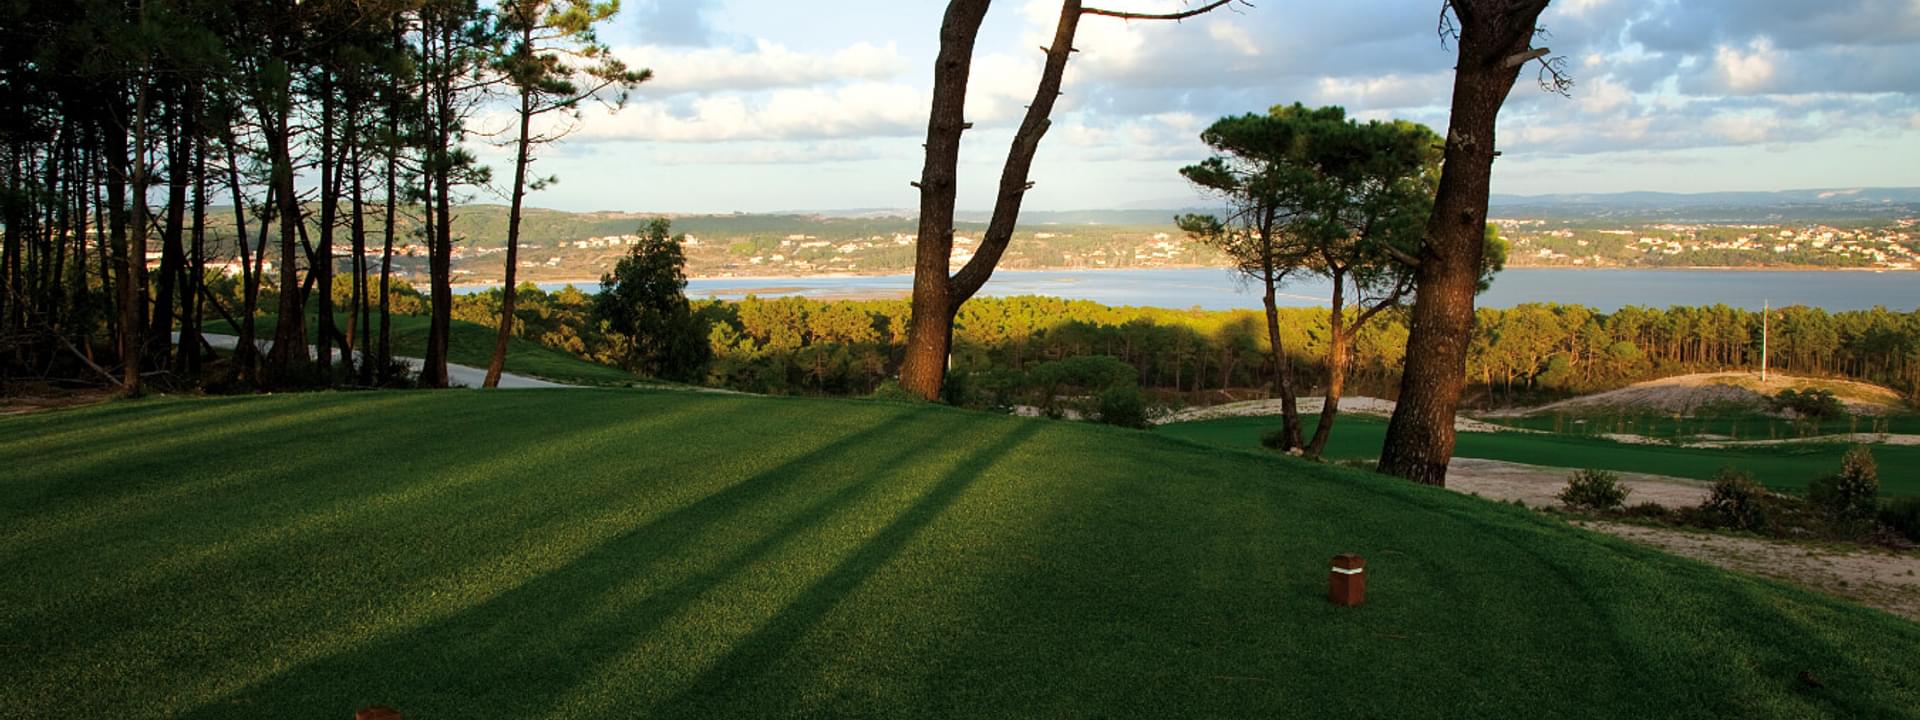 Die 6 besten Golfplätze im Centro de Portugal: eine Top-Liste Golfplätze